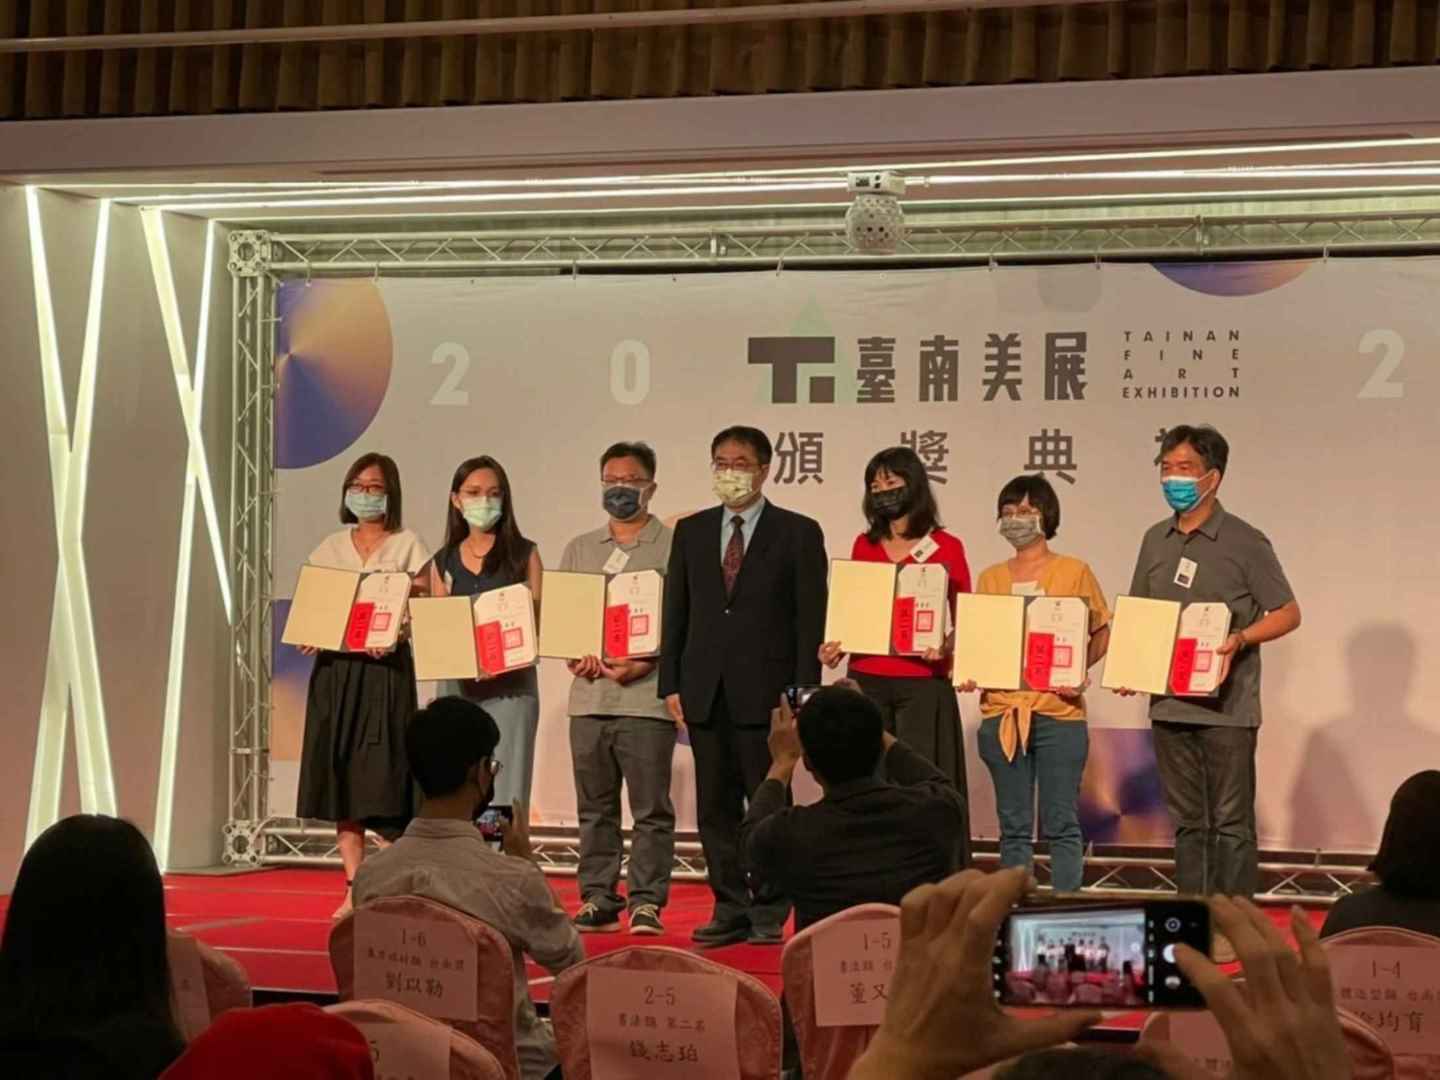 2021臺南美展頒獎典禮，本系共計有40位學生（包含7位系友）獲獎。